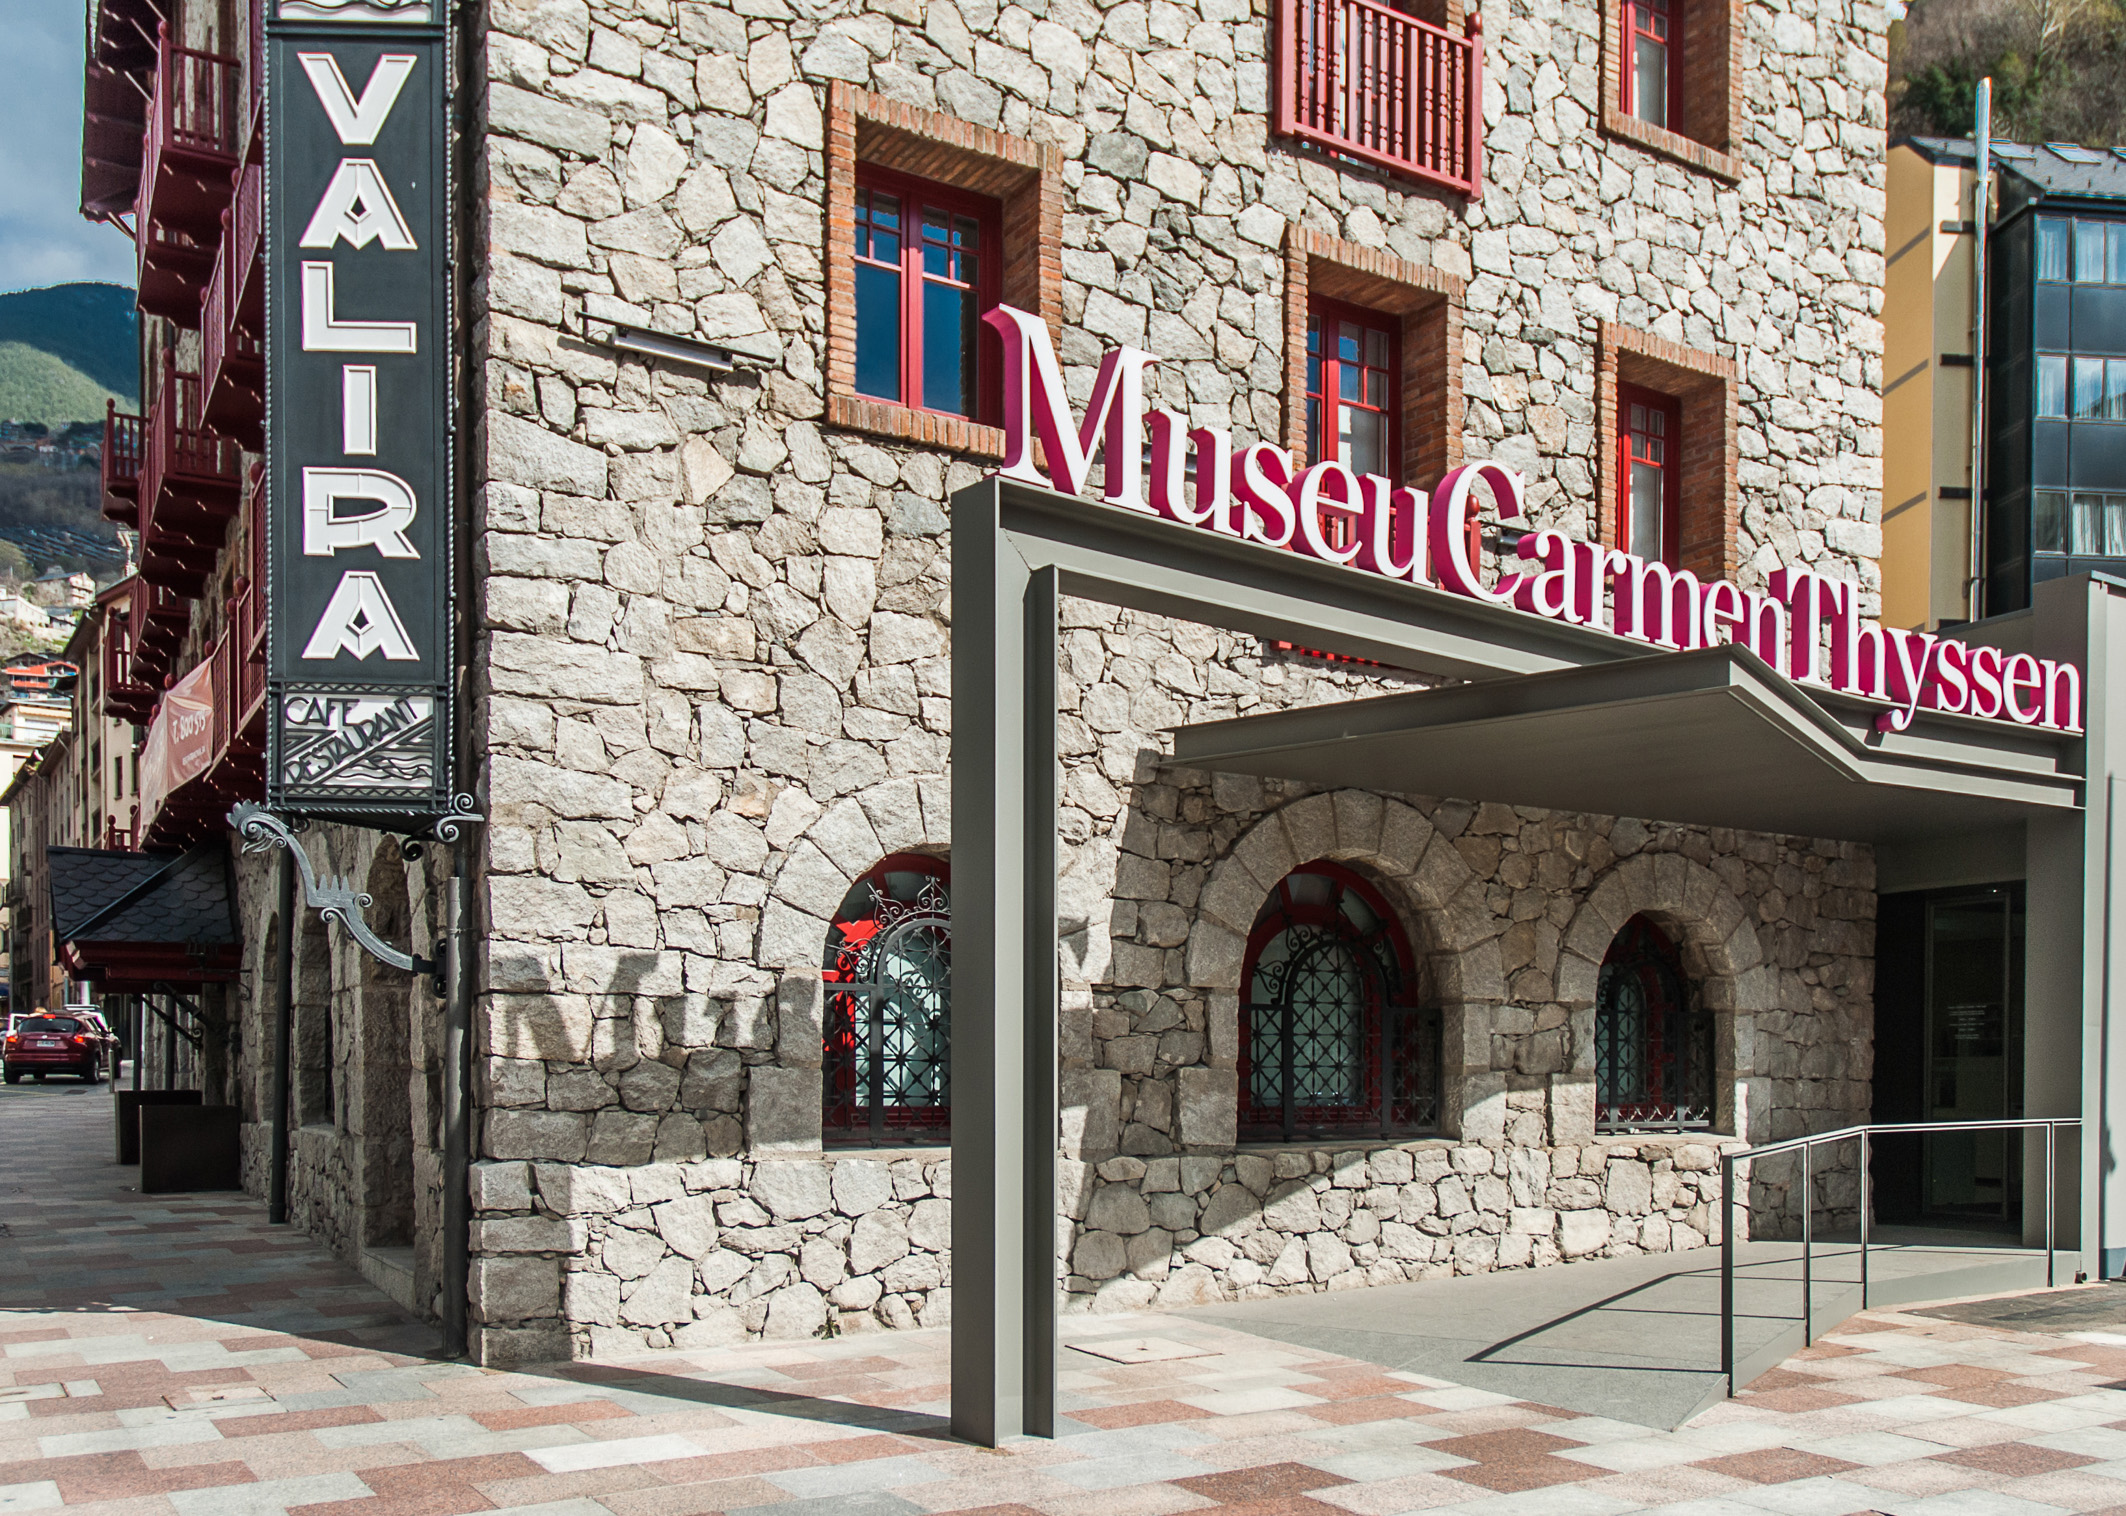 Museu Carmen Thyssen